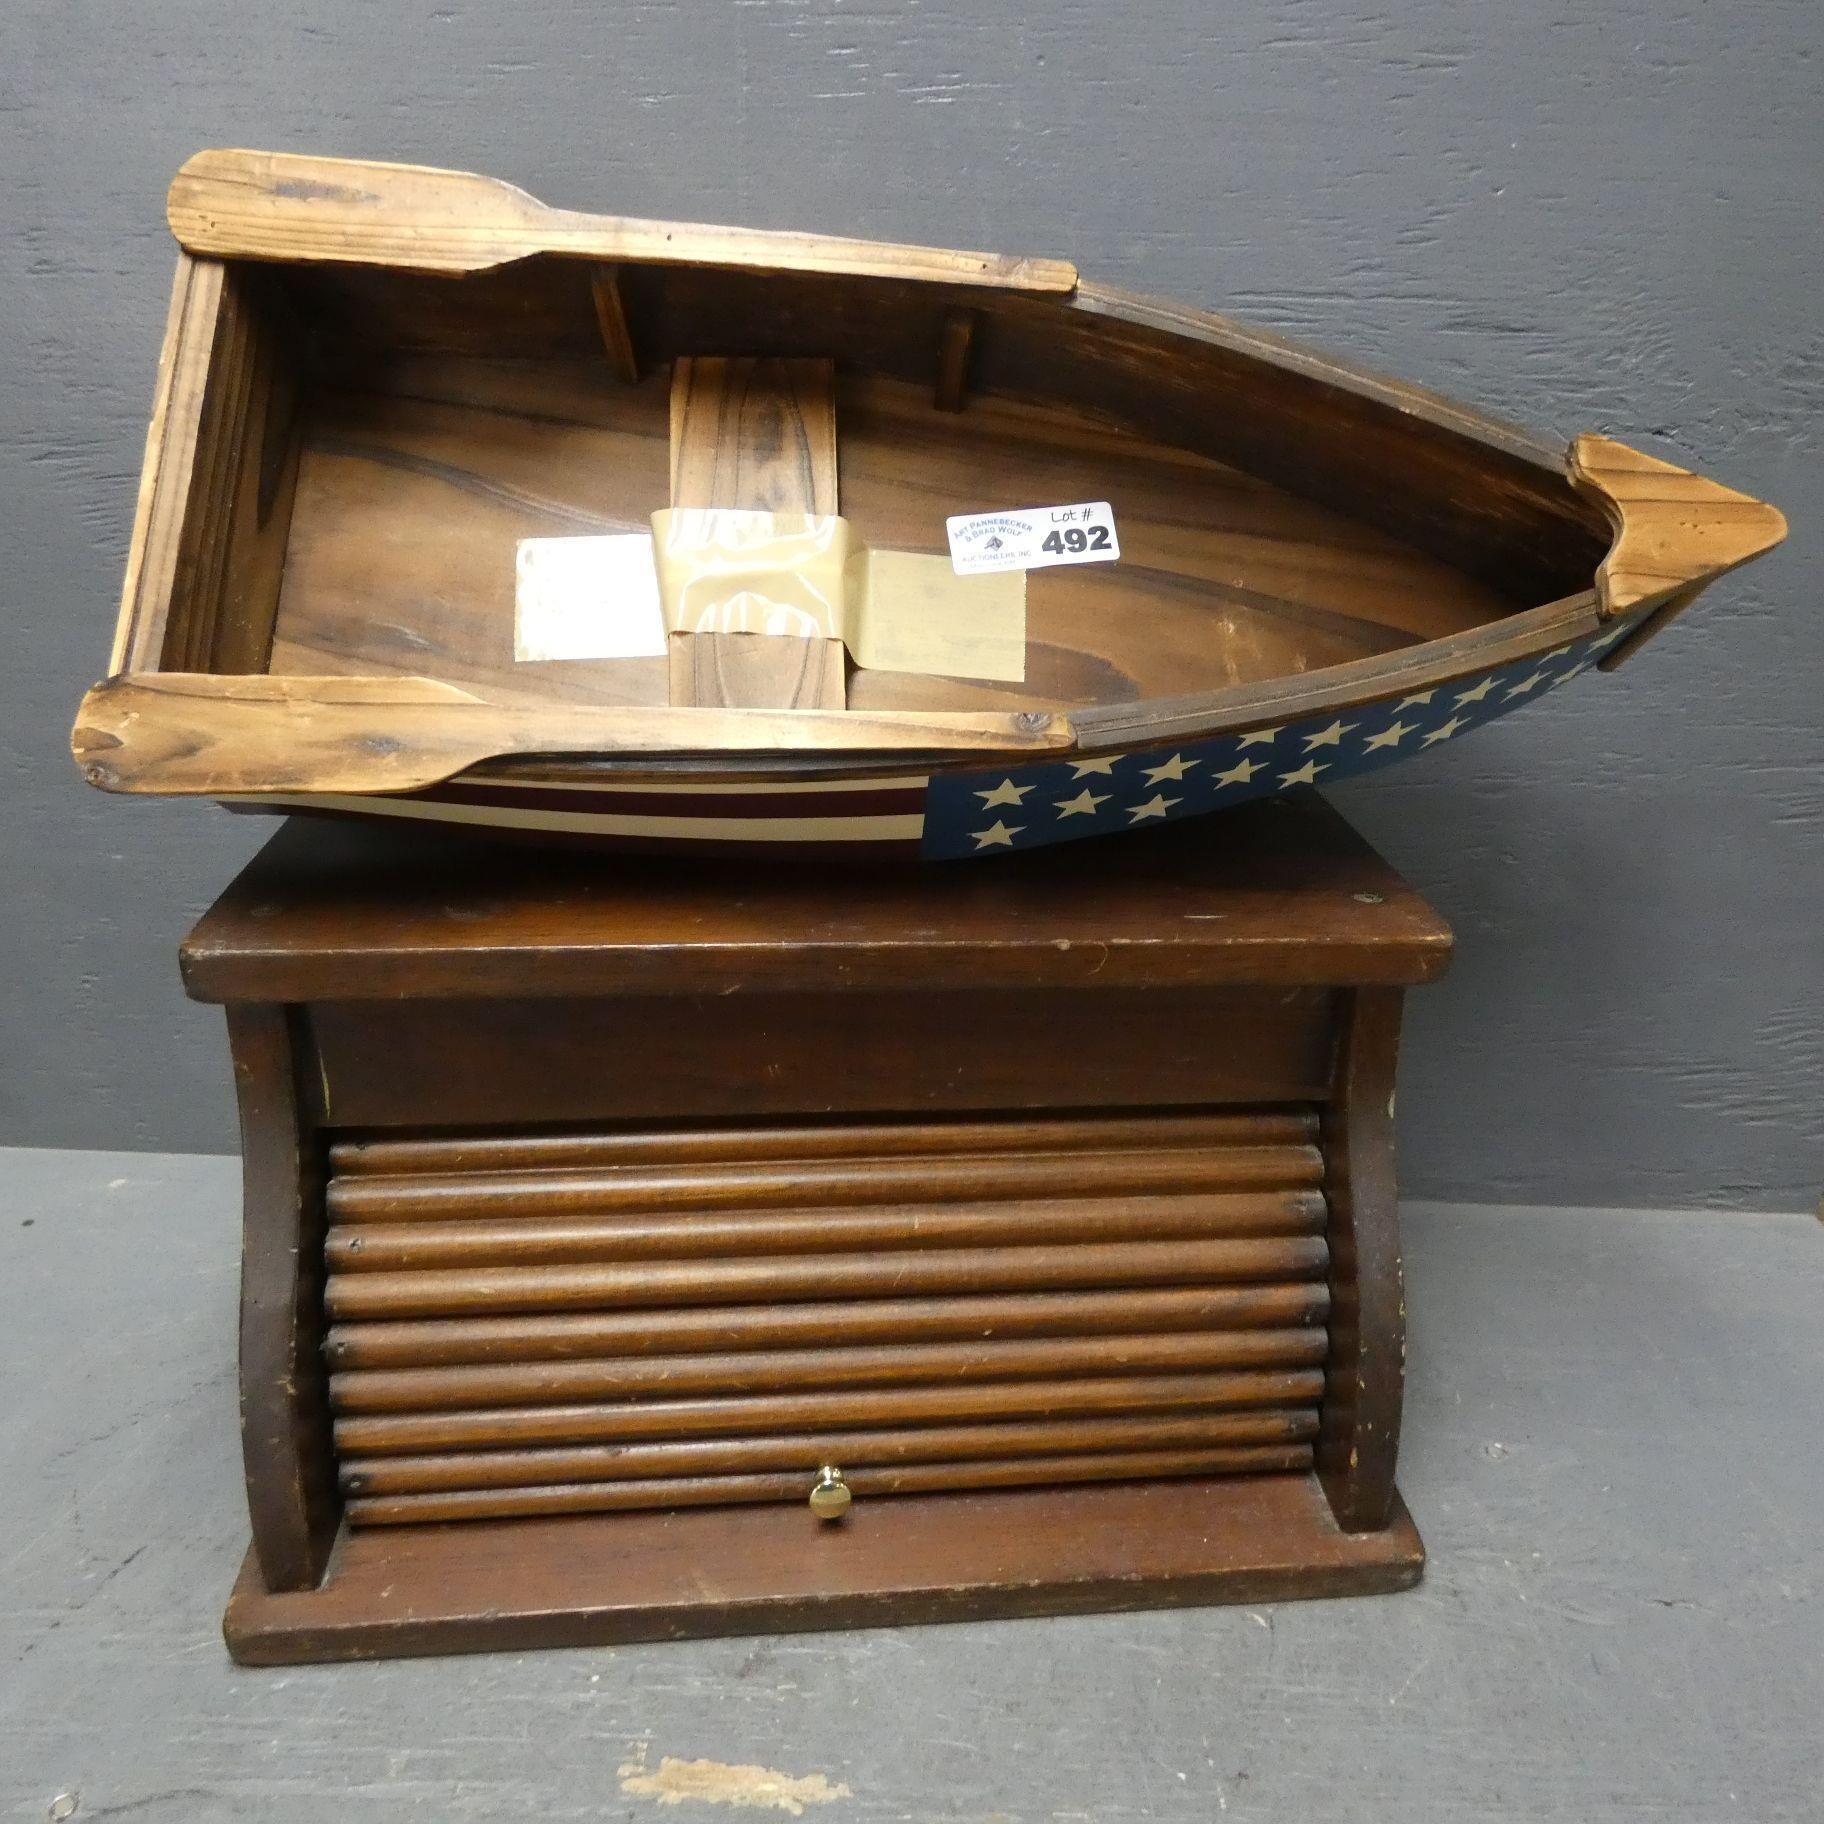 Wooden Boat Shelf, Bread Box